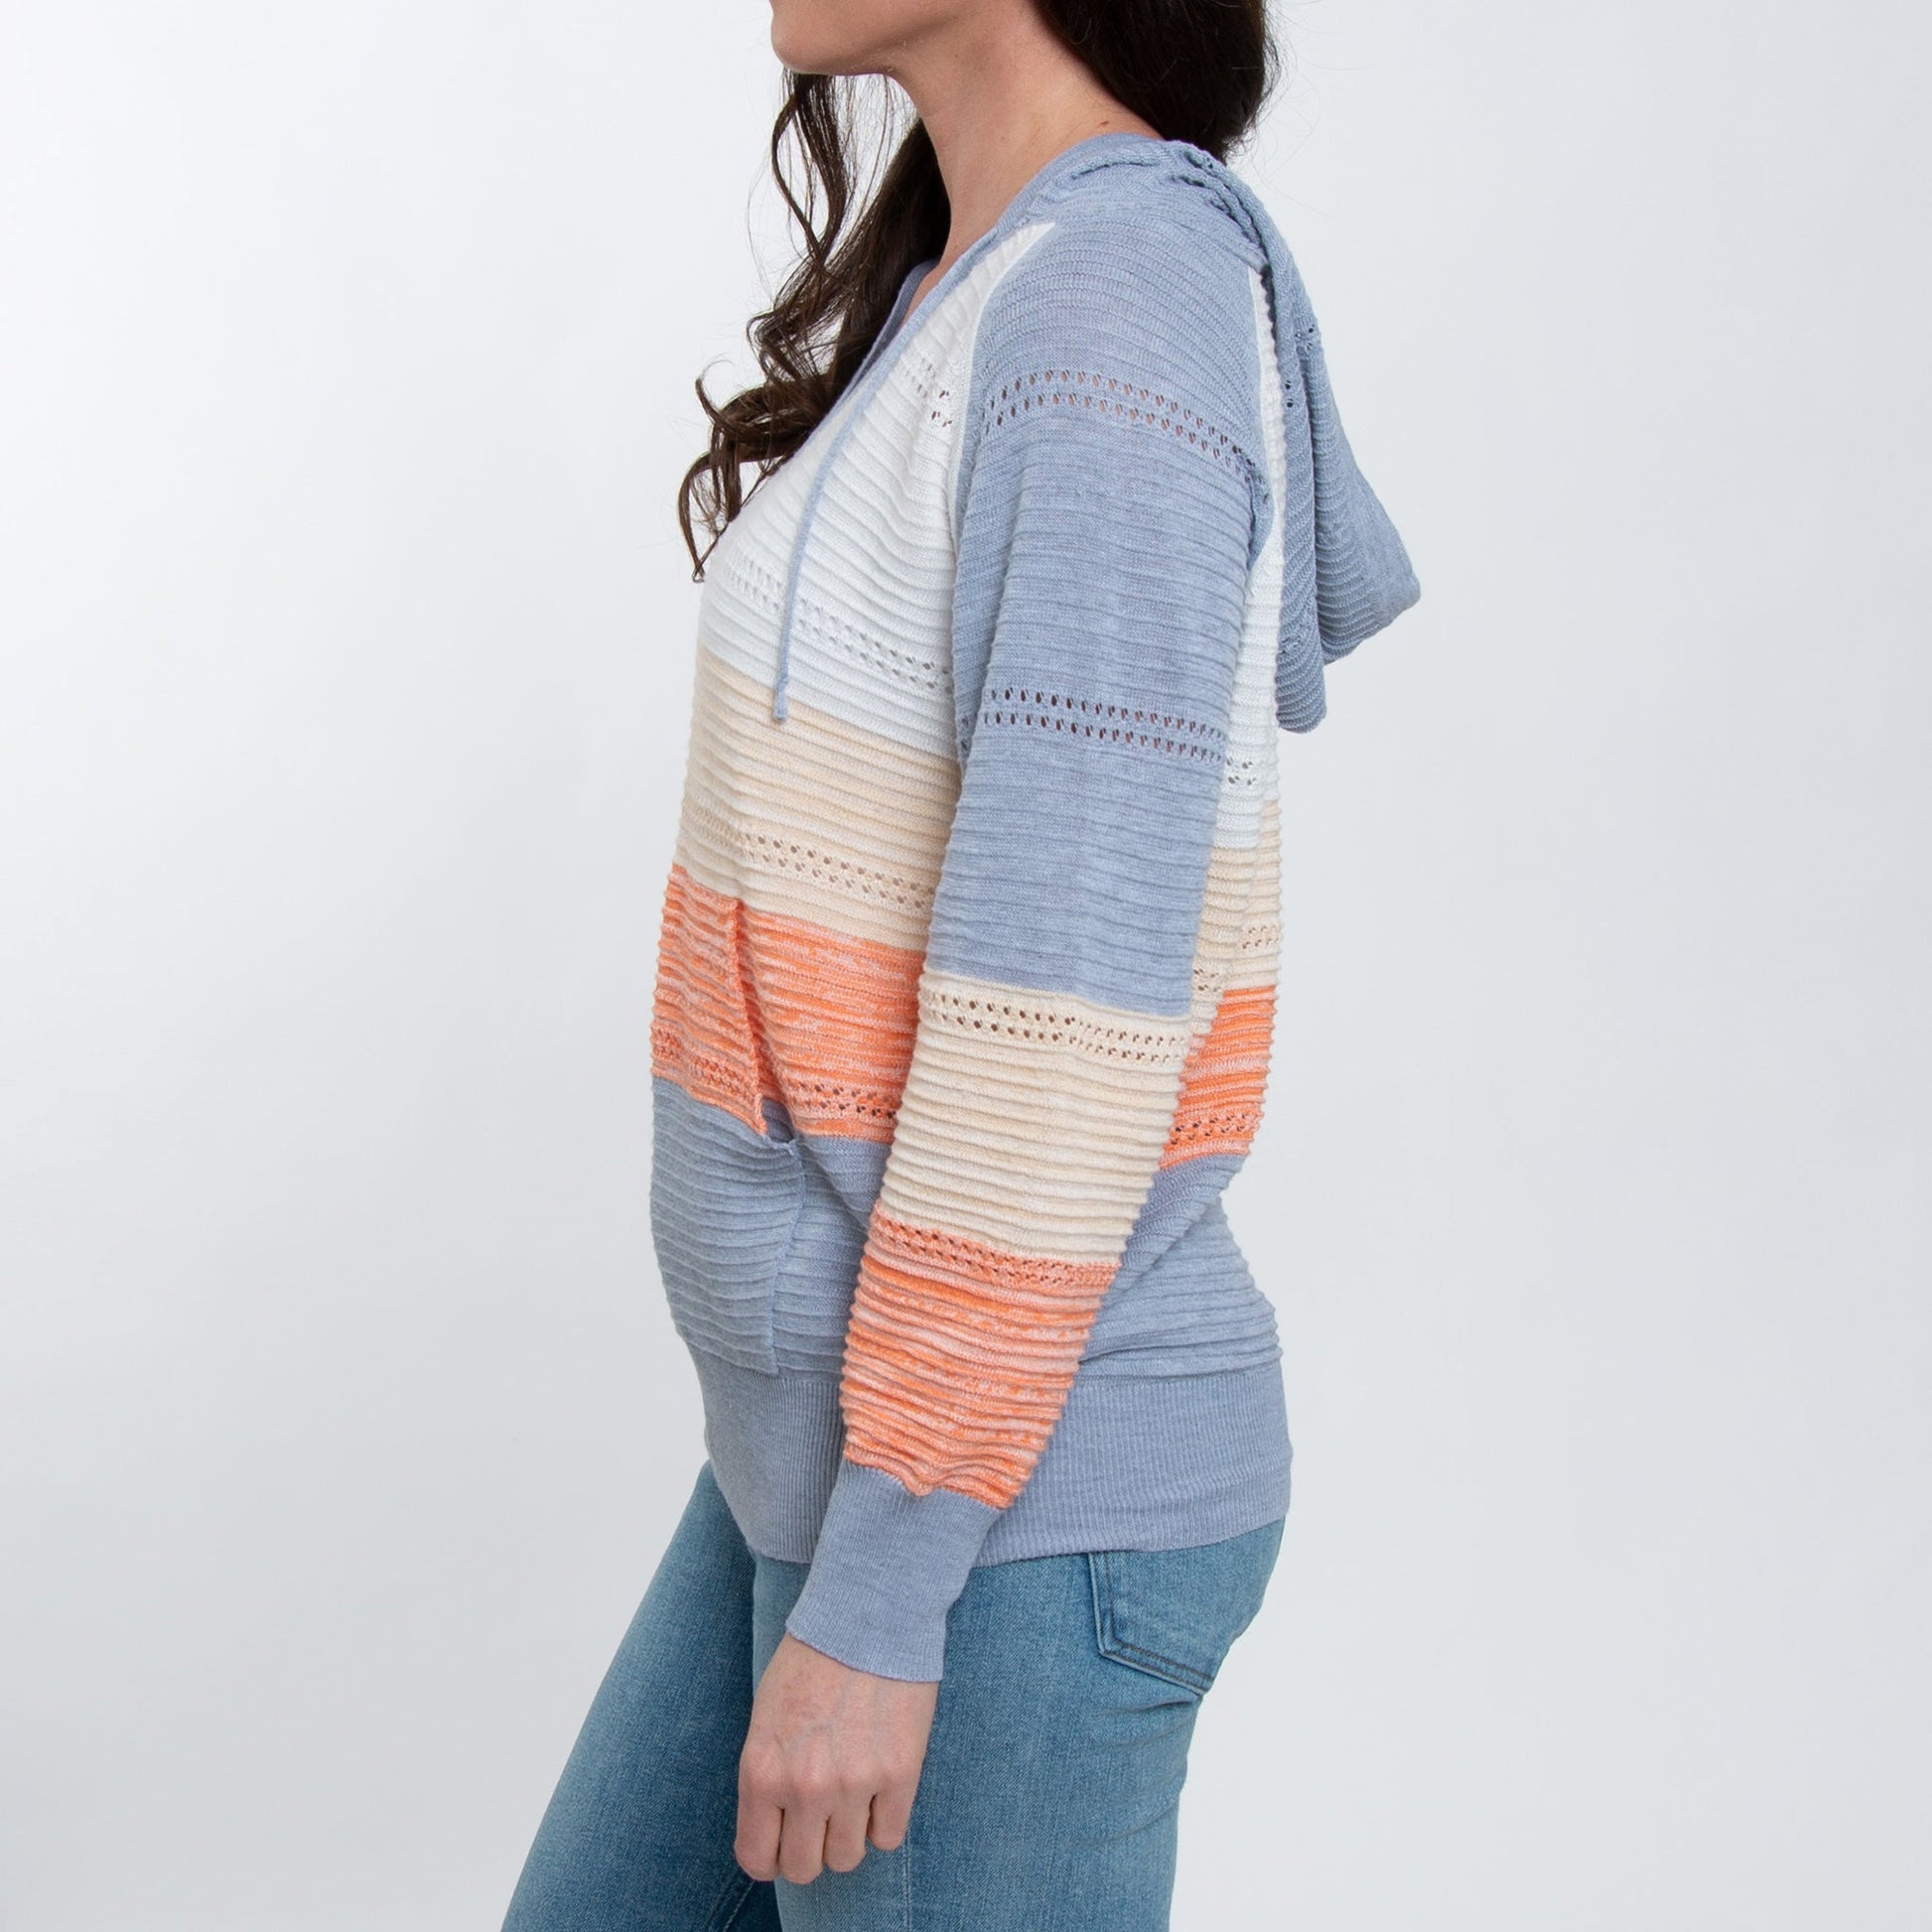 Elsie & Zoey  Women's Avalon Crochet Color Block Hooded Pullover